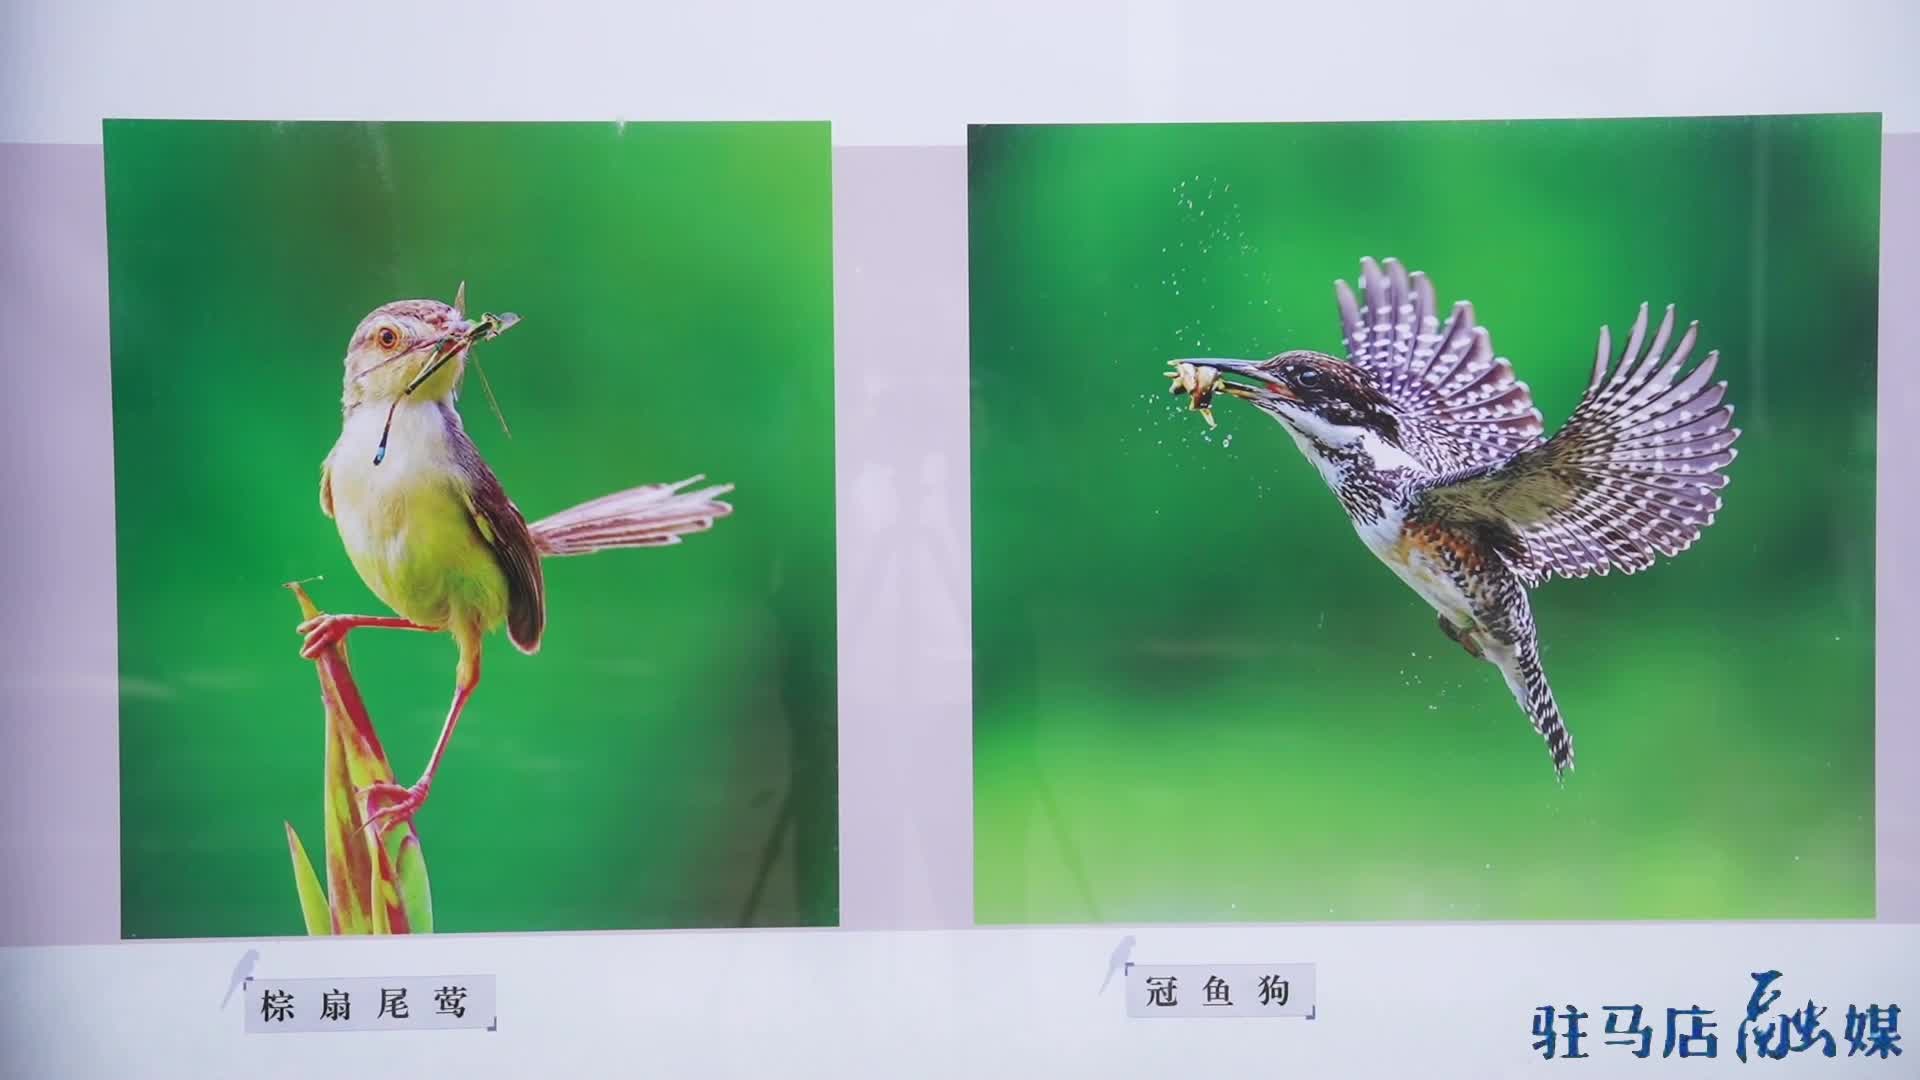 驻马店市举办“呵护鸟类 珍爱家园”摄影展